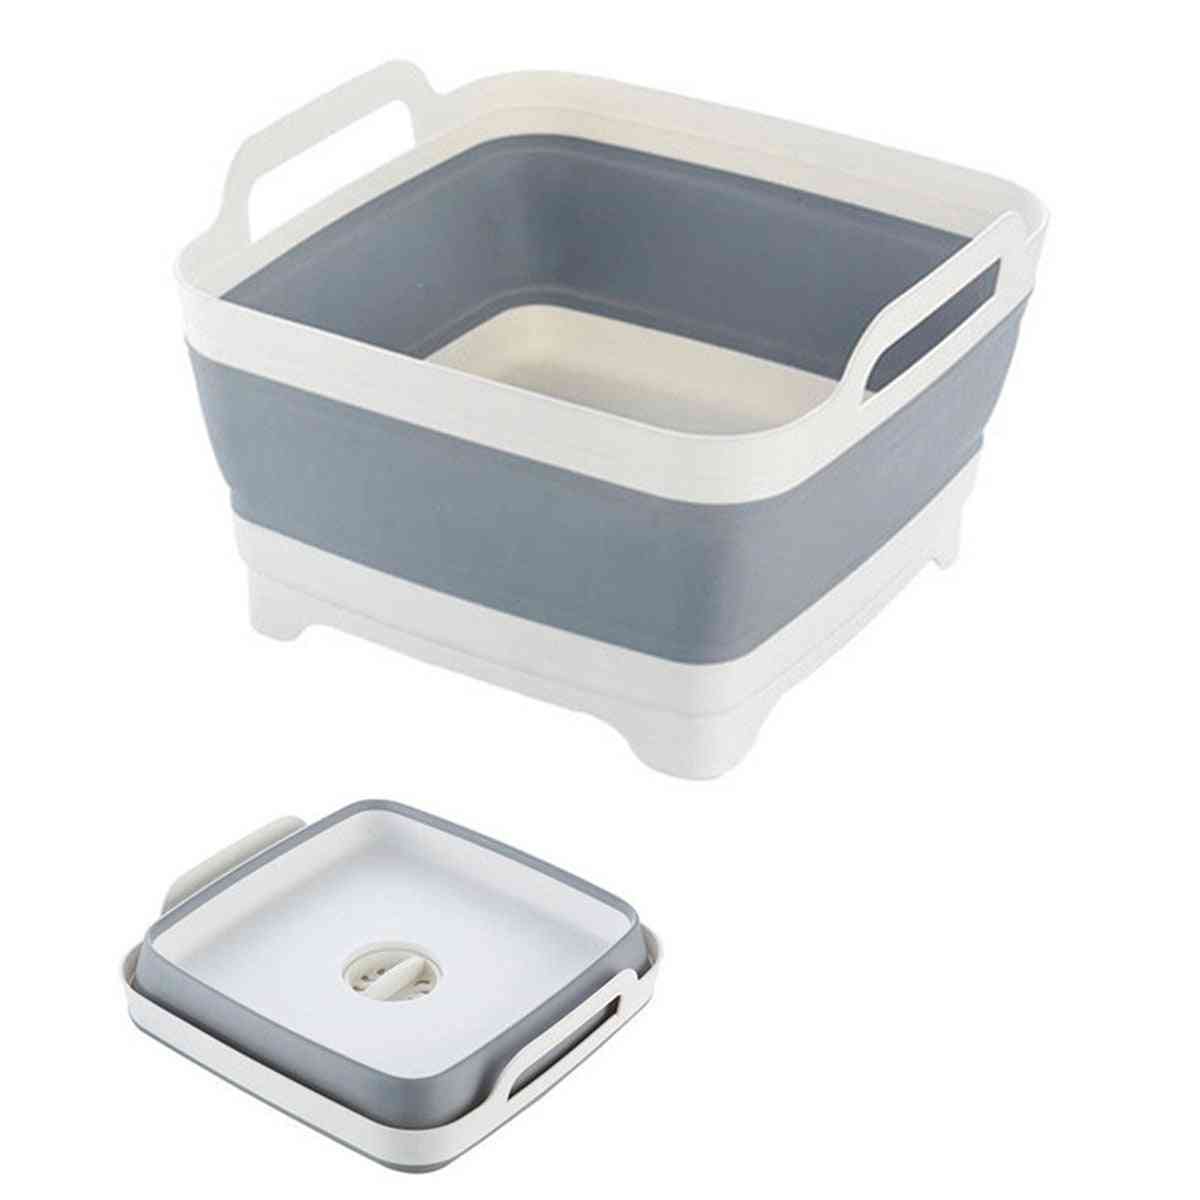 Folding Wash Basin, Silicone Dish Tub Collapsible Basin